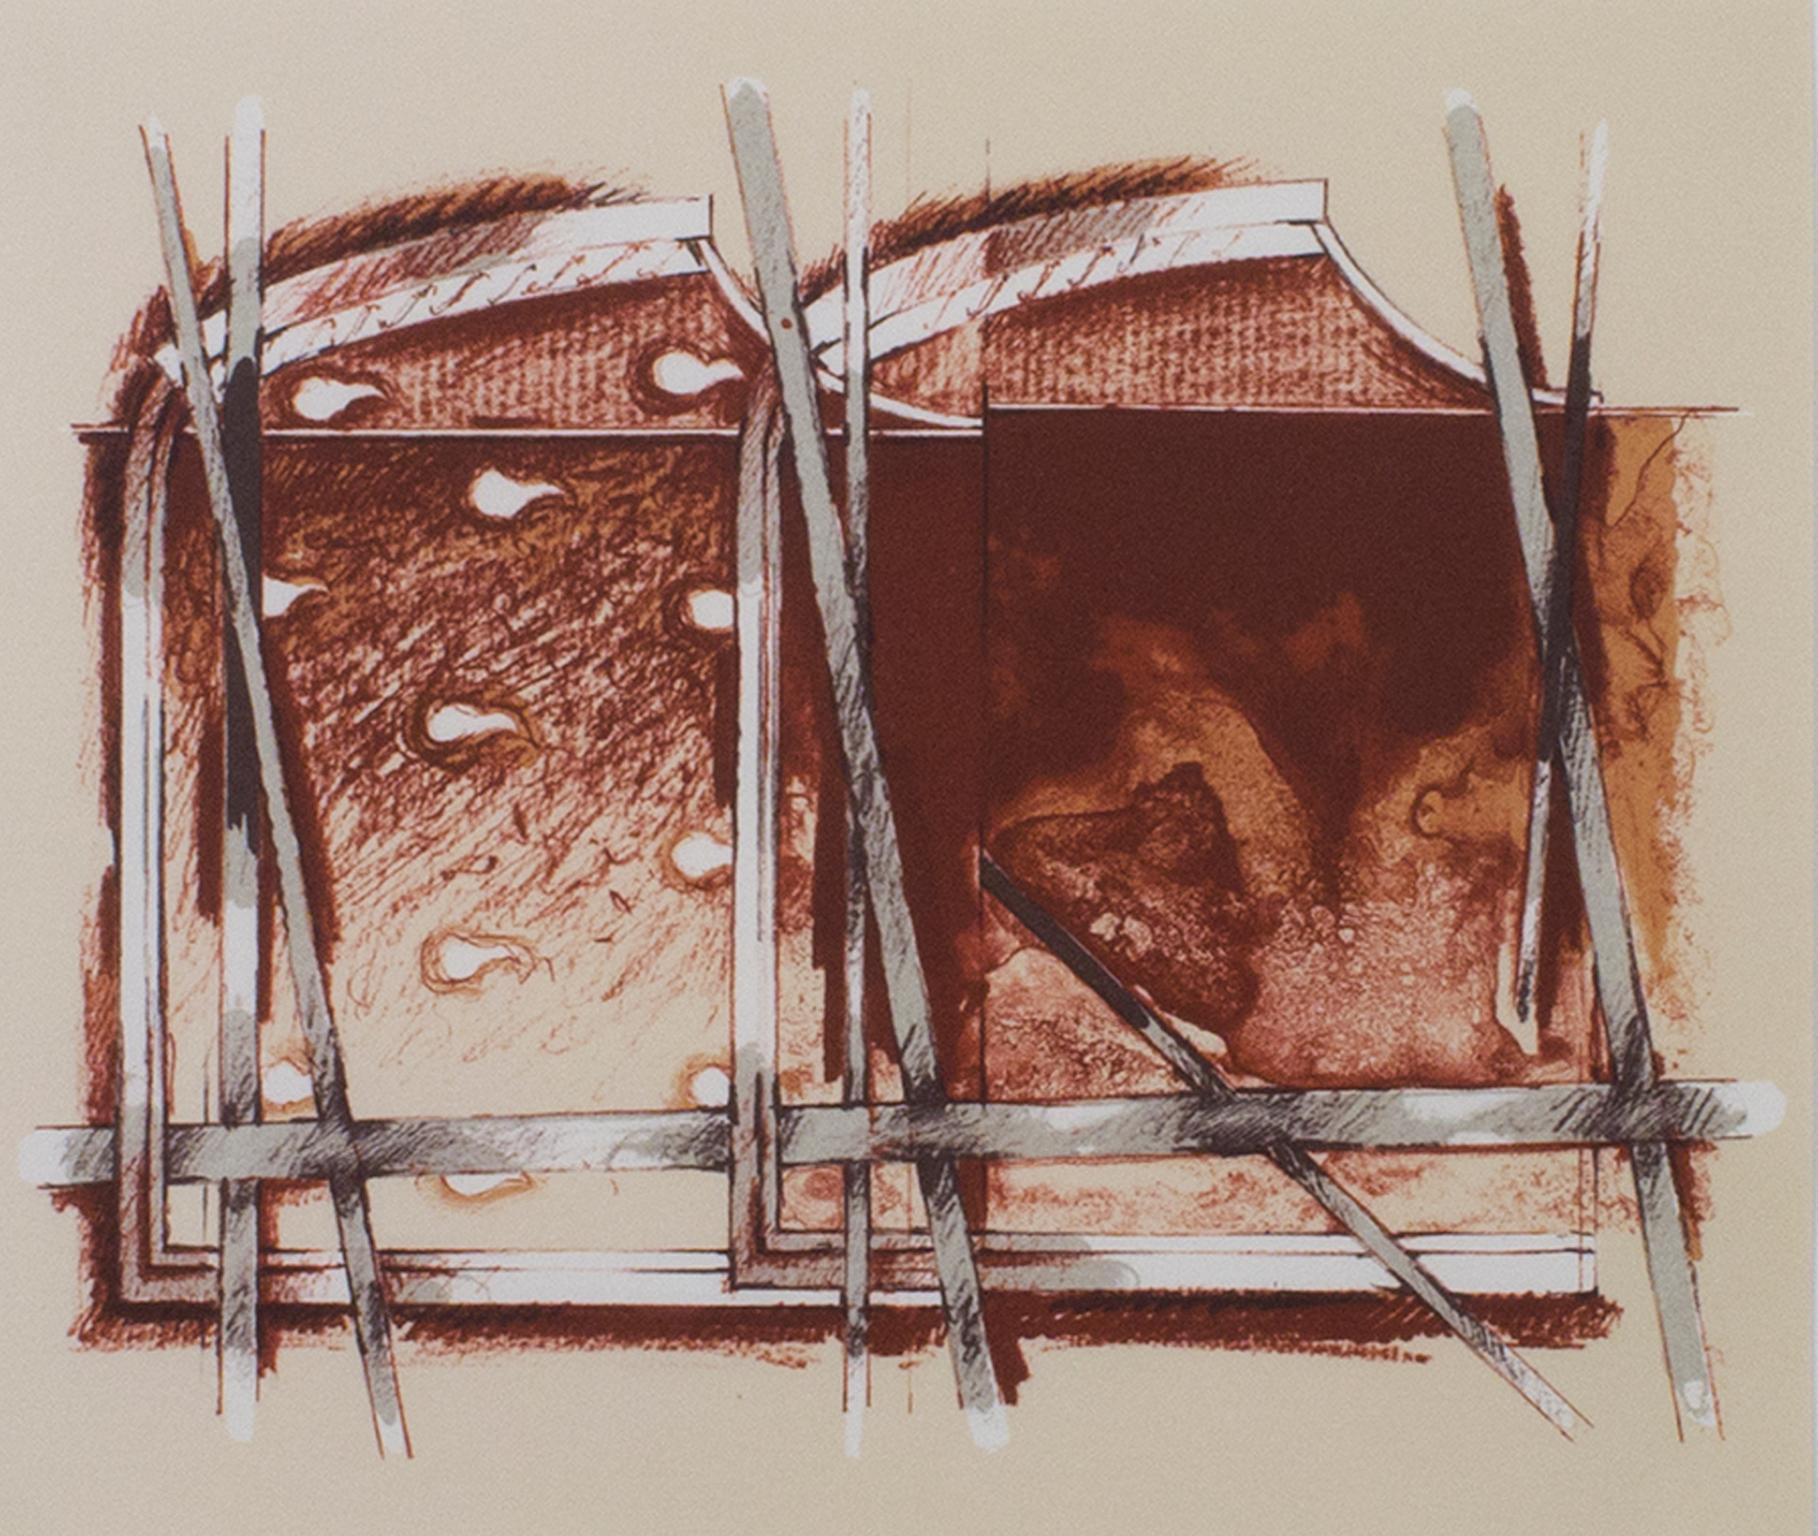 "Abstrakt" ist eine Farblithografie von Gerard Titus-Carmel. Es zeigt eine Mischung aus biomorphen und geometrischen/strukturellen Formen in Sepiatönen. 

8 1/4" x 9 1/2" Kunst
16 7/8" x 18" Rahmen

Gérard Titus-Carmel, geboren am 10. Oktober 1942